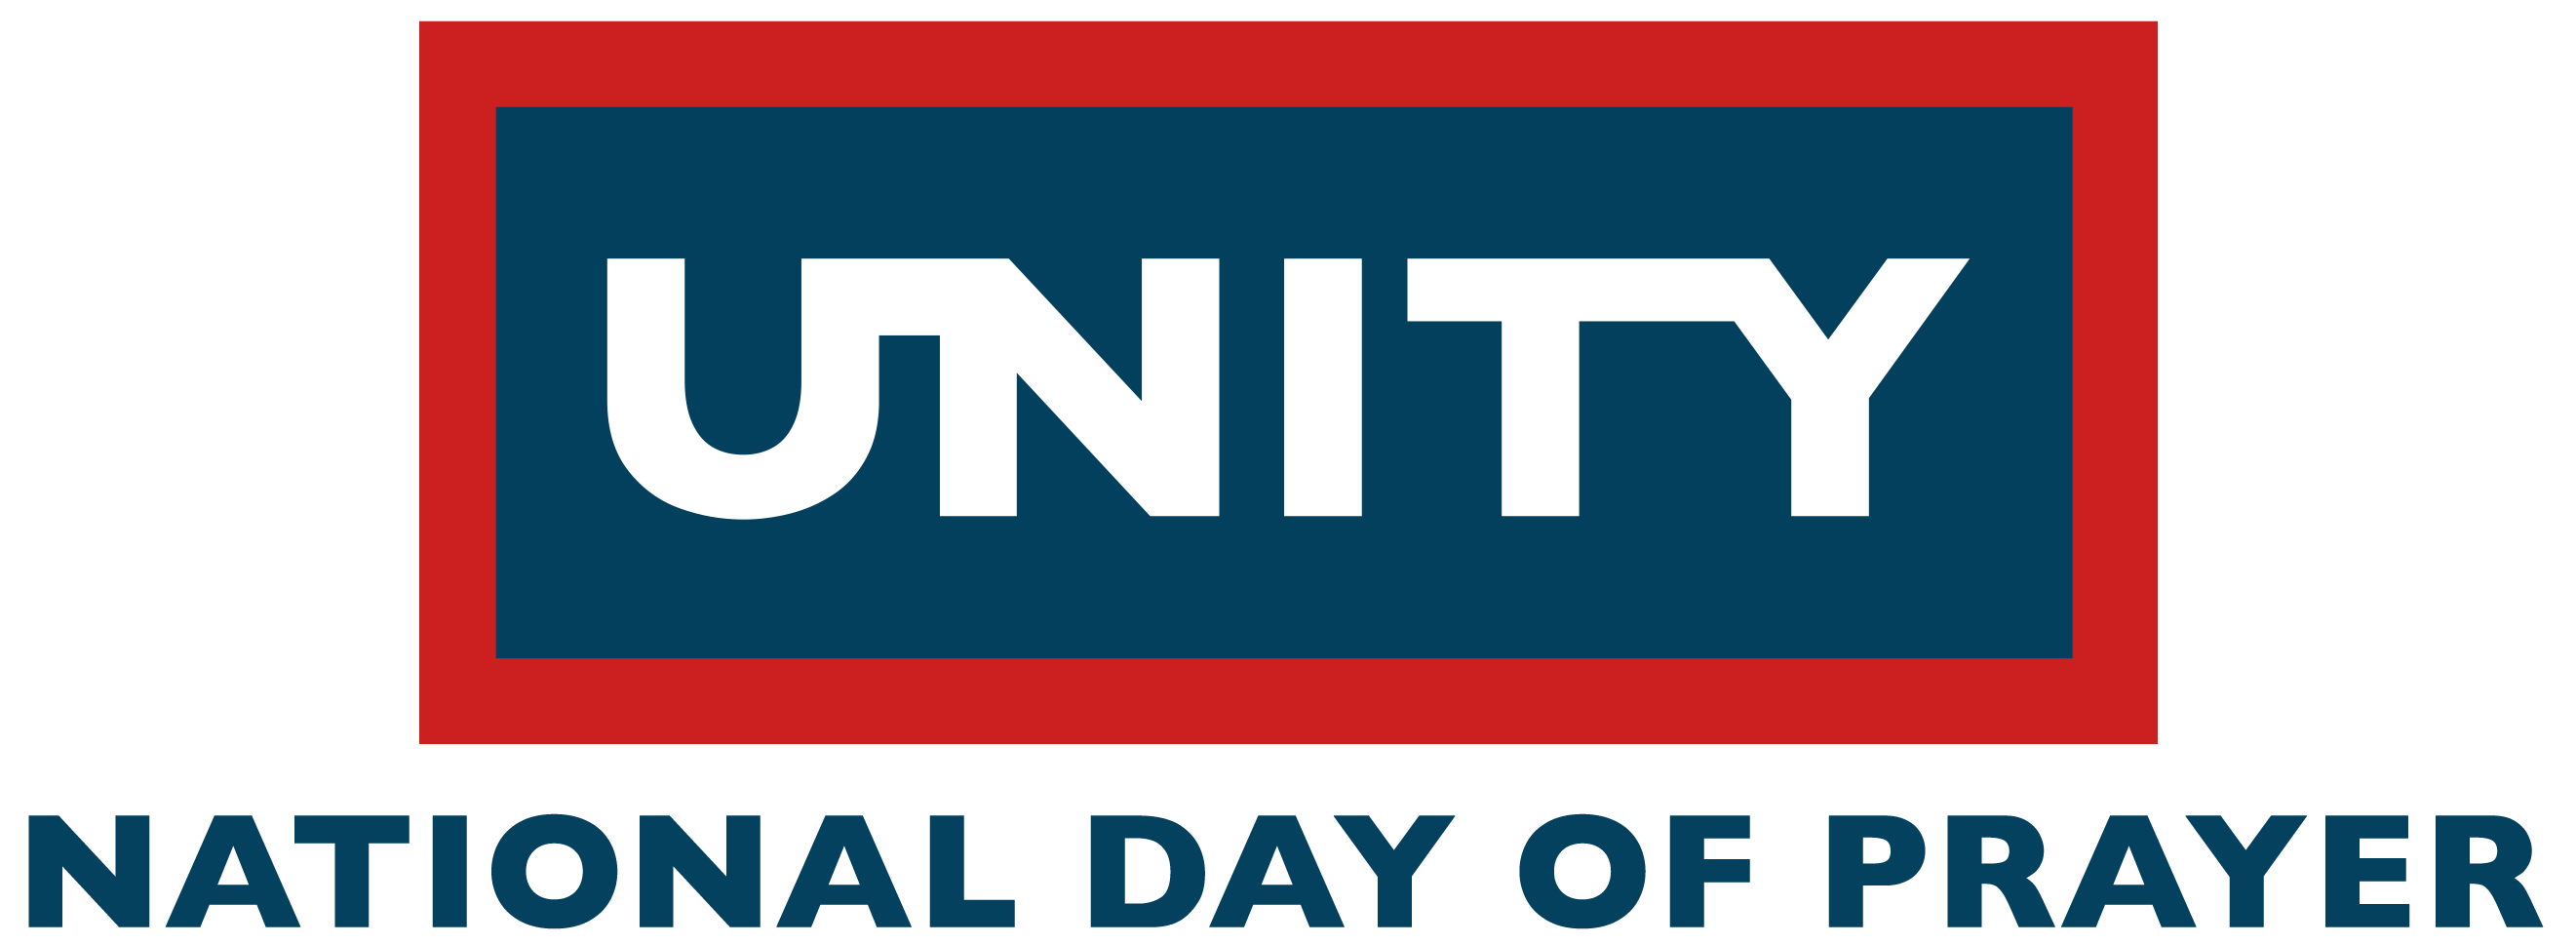 Unity - National Day Prayer Logo